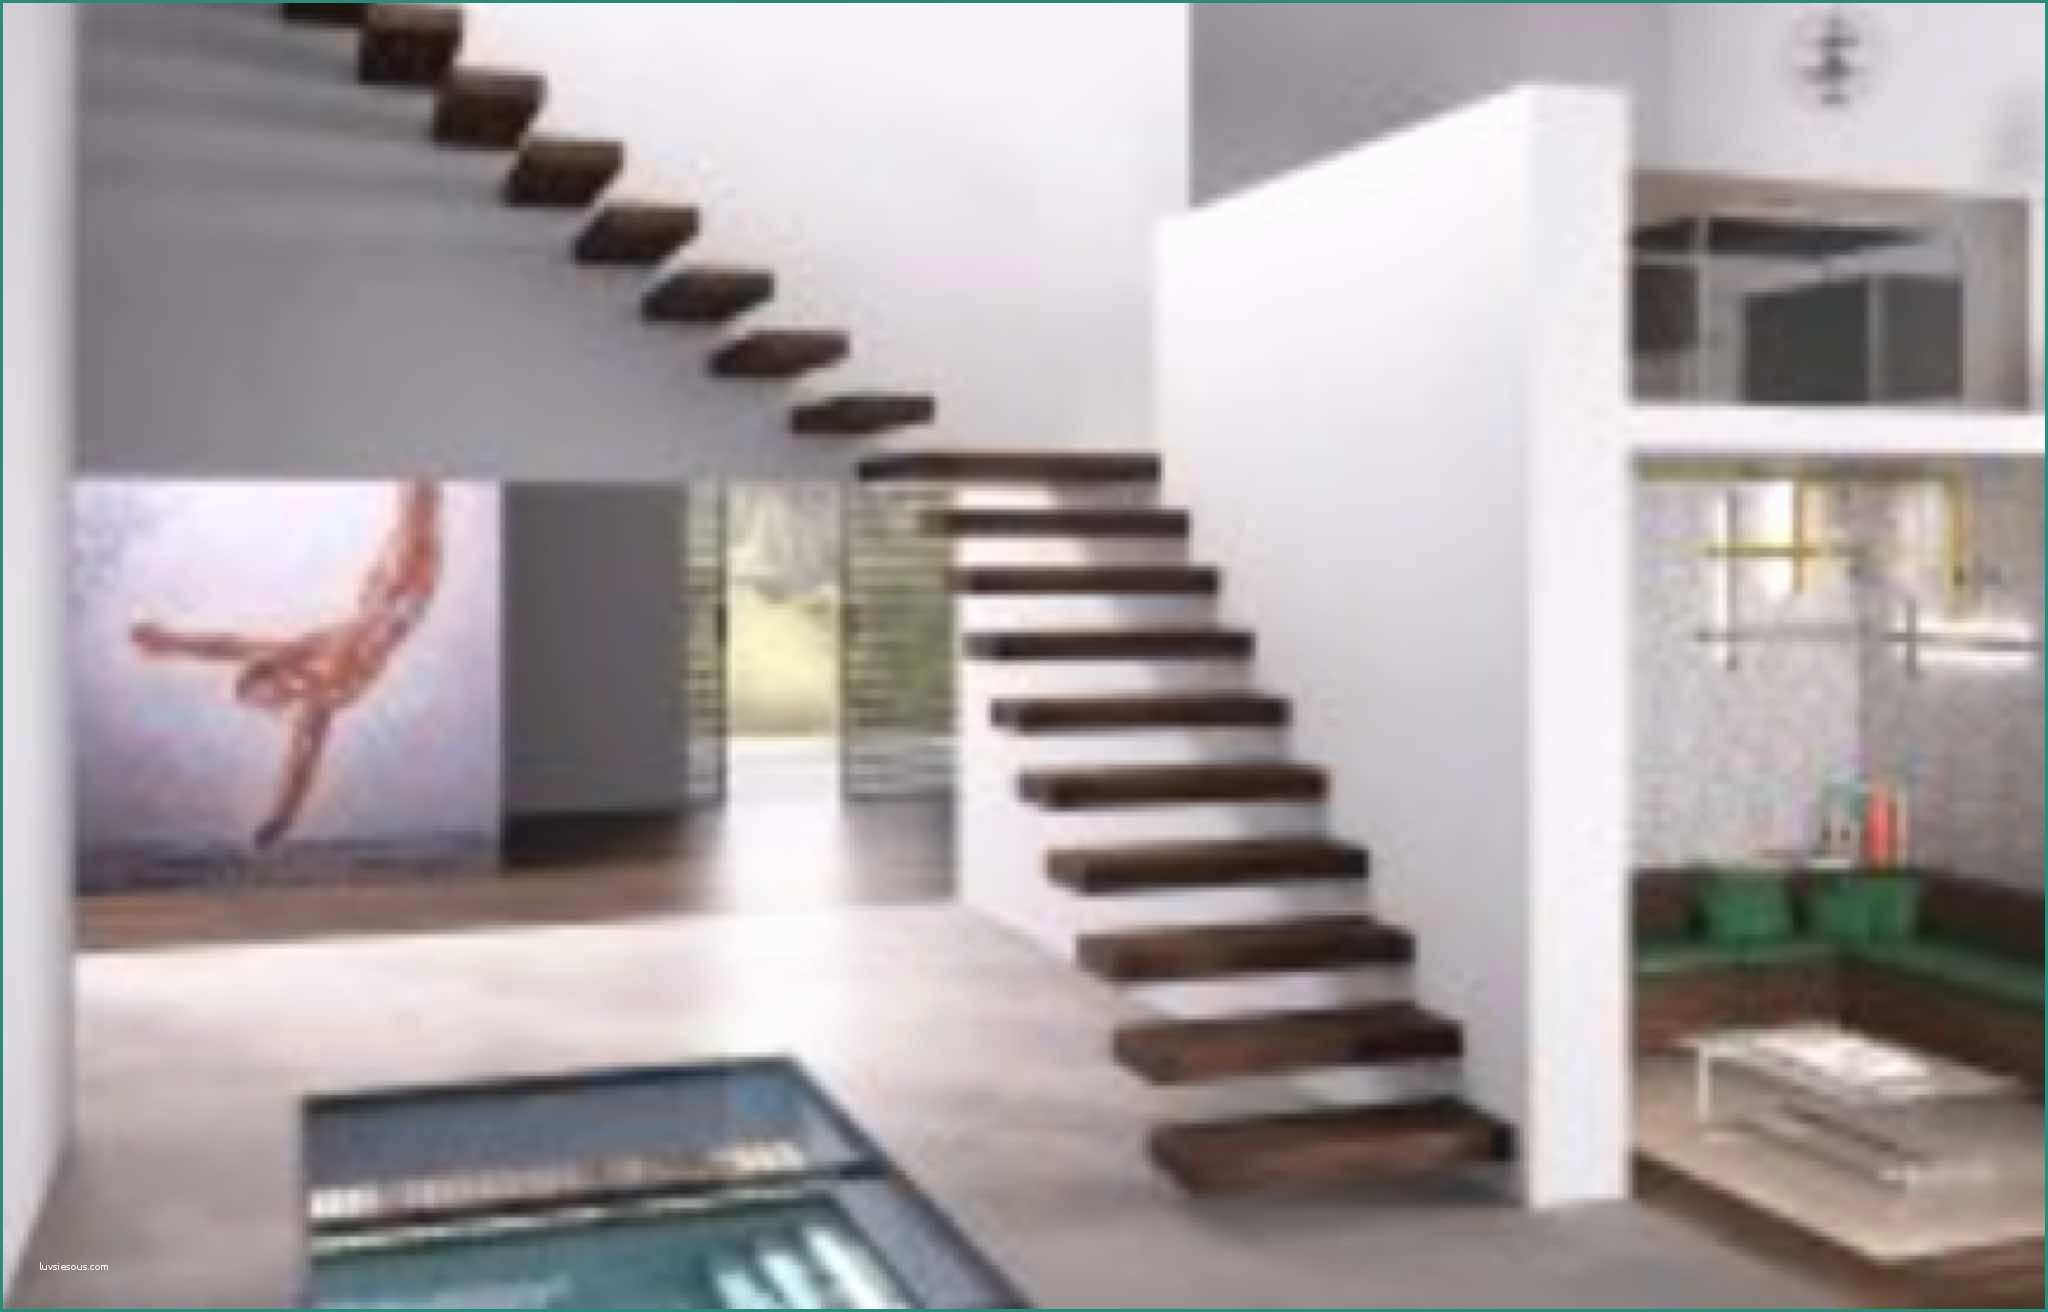 Illuminazione Scale Interne E Scale Interne Di Design Stairs Architects the Cap Studio